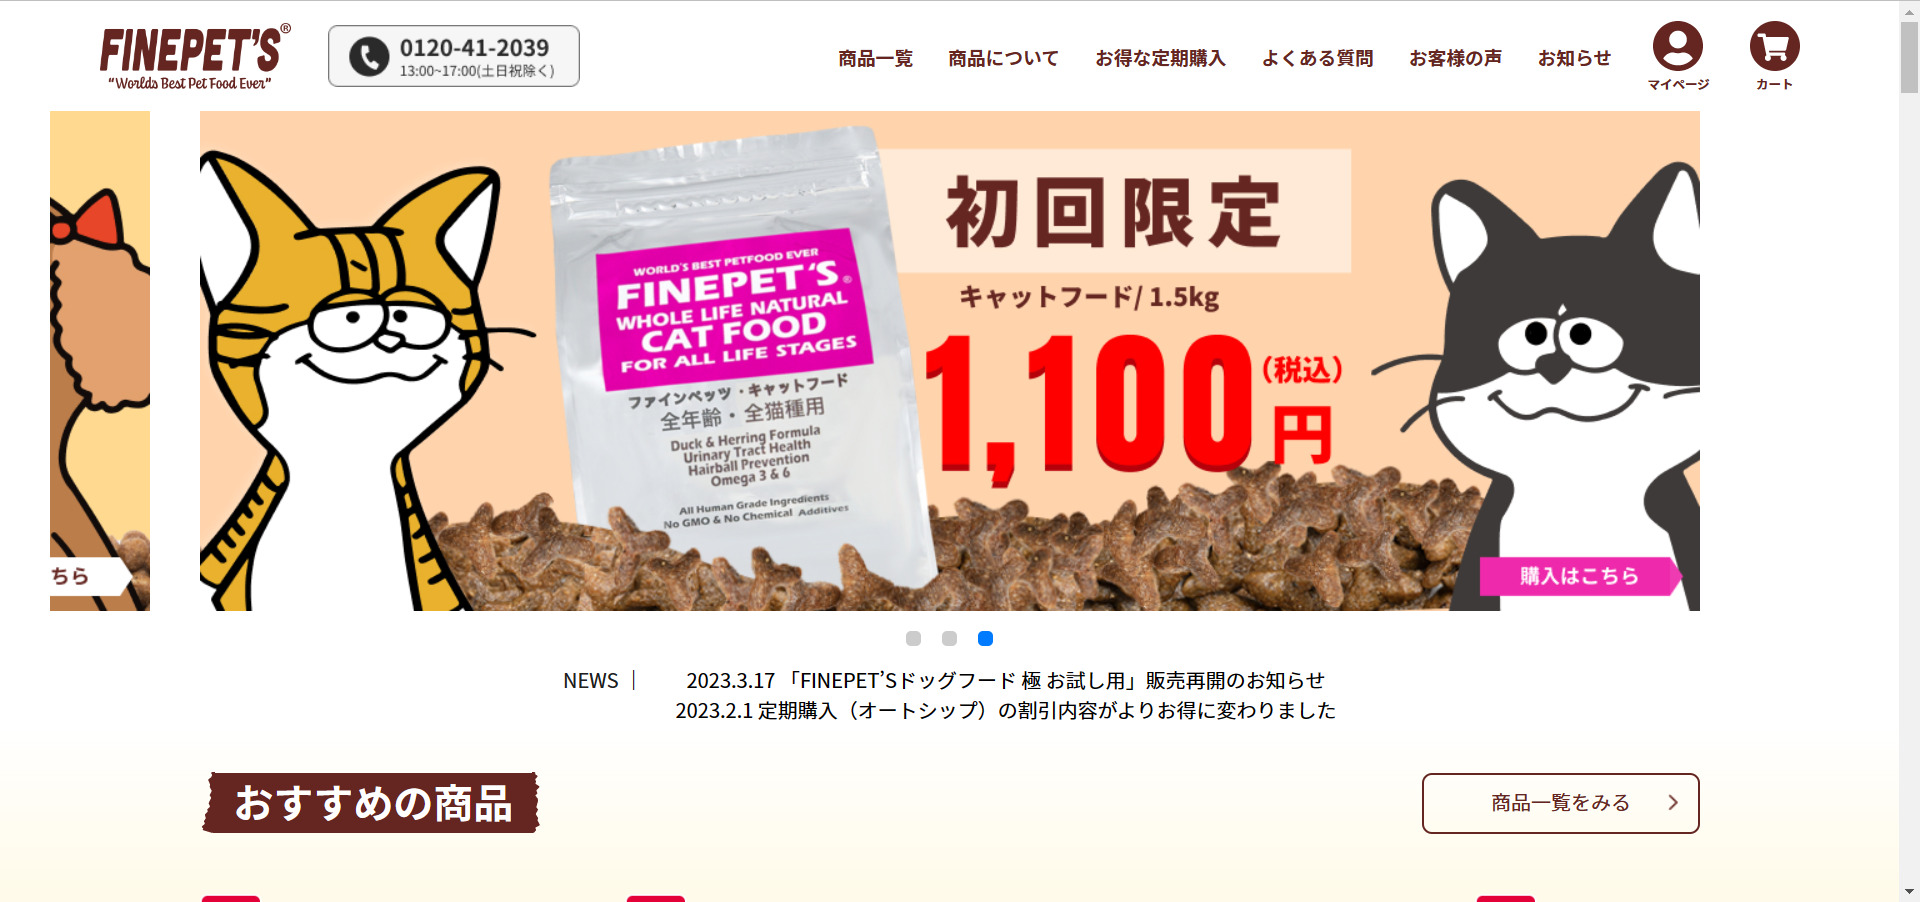 FINEPET'S（ファインペッツ）は、アレルギー性の低いアヒル肉とニシン肉を主原料にしたキャットフード【安心のお試し用あり】